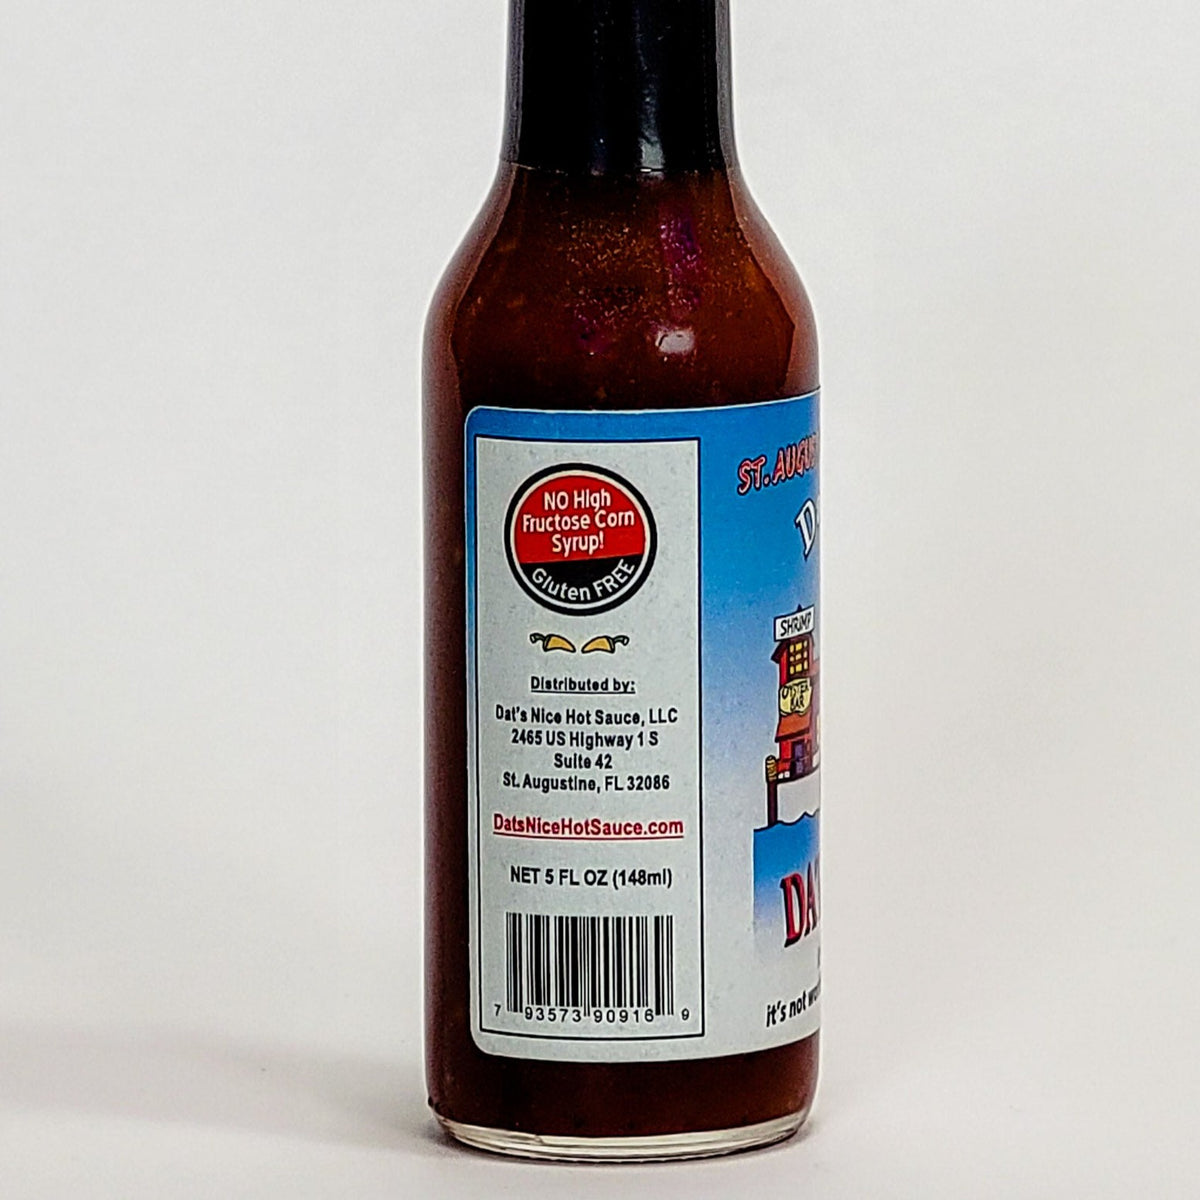 dats nice datil pepper sauce label description